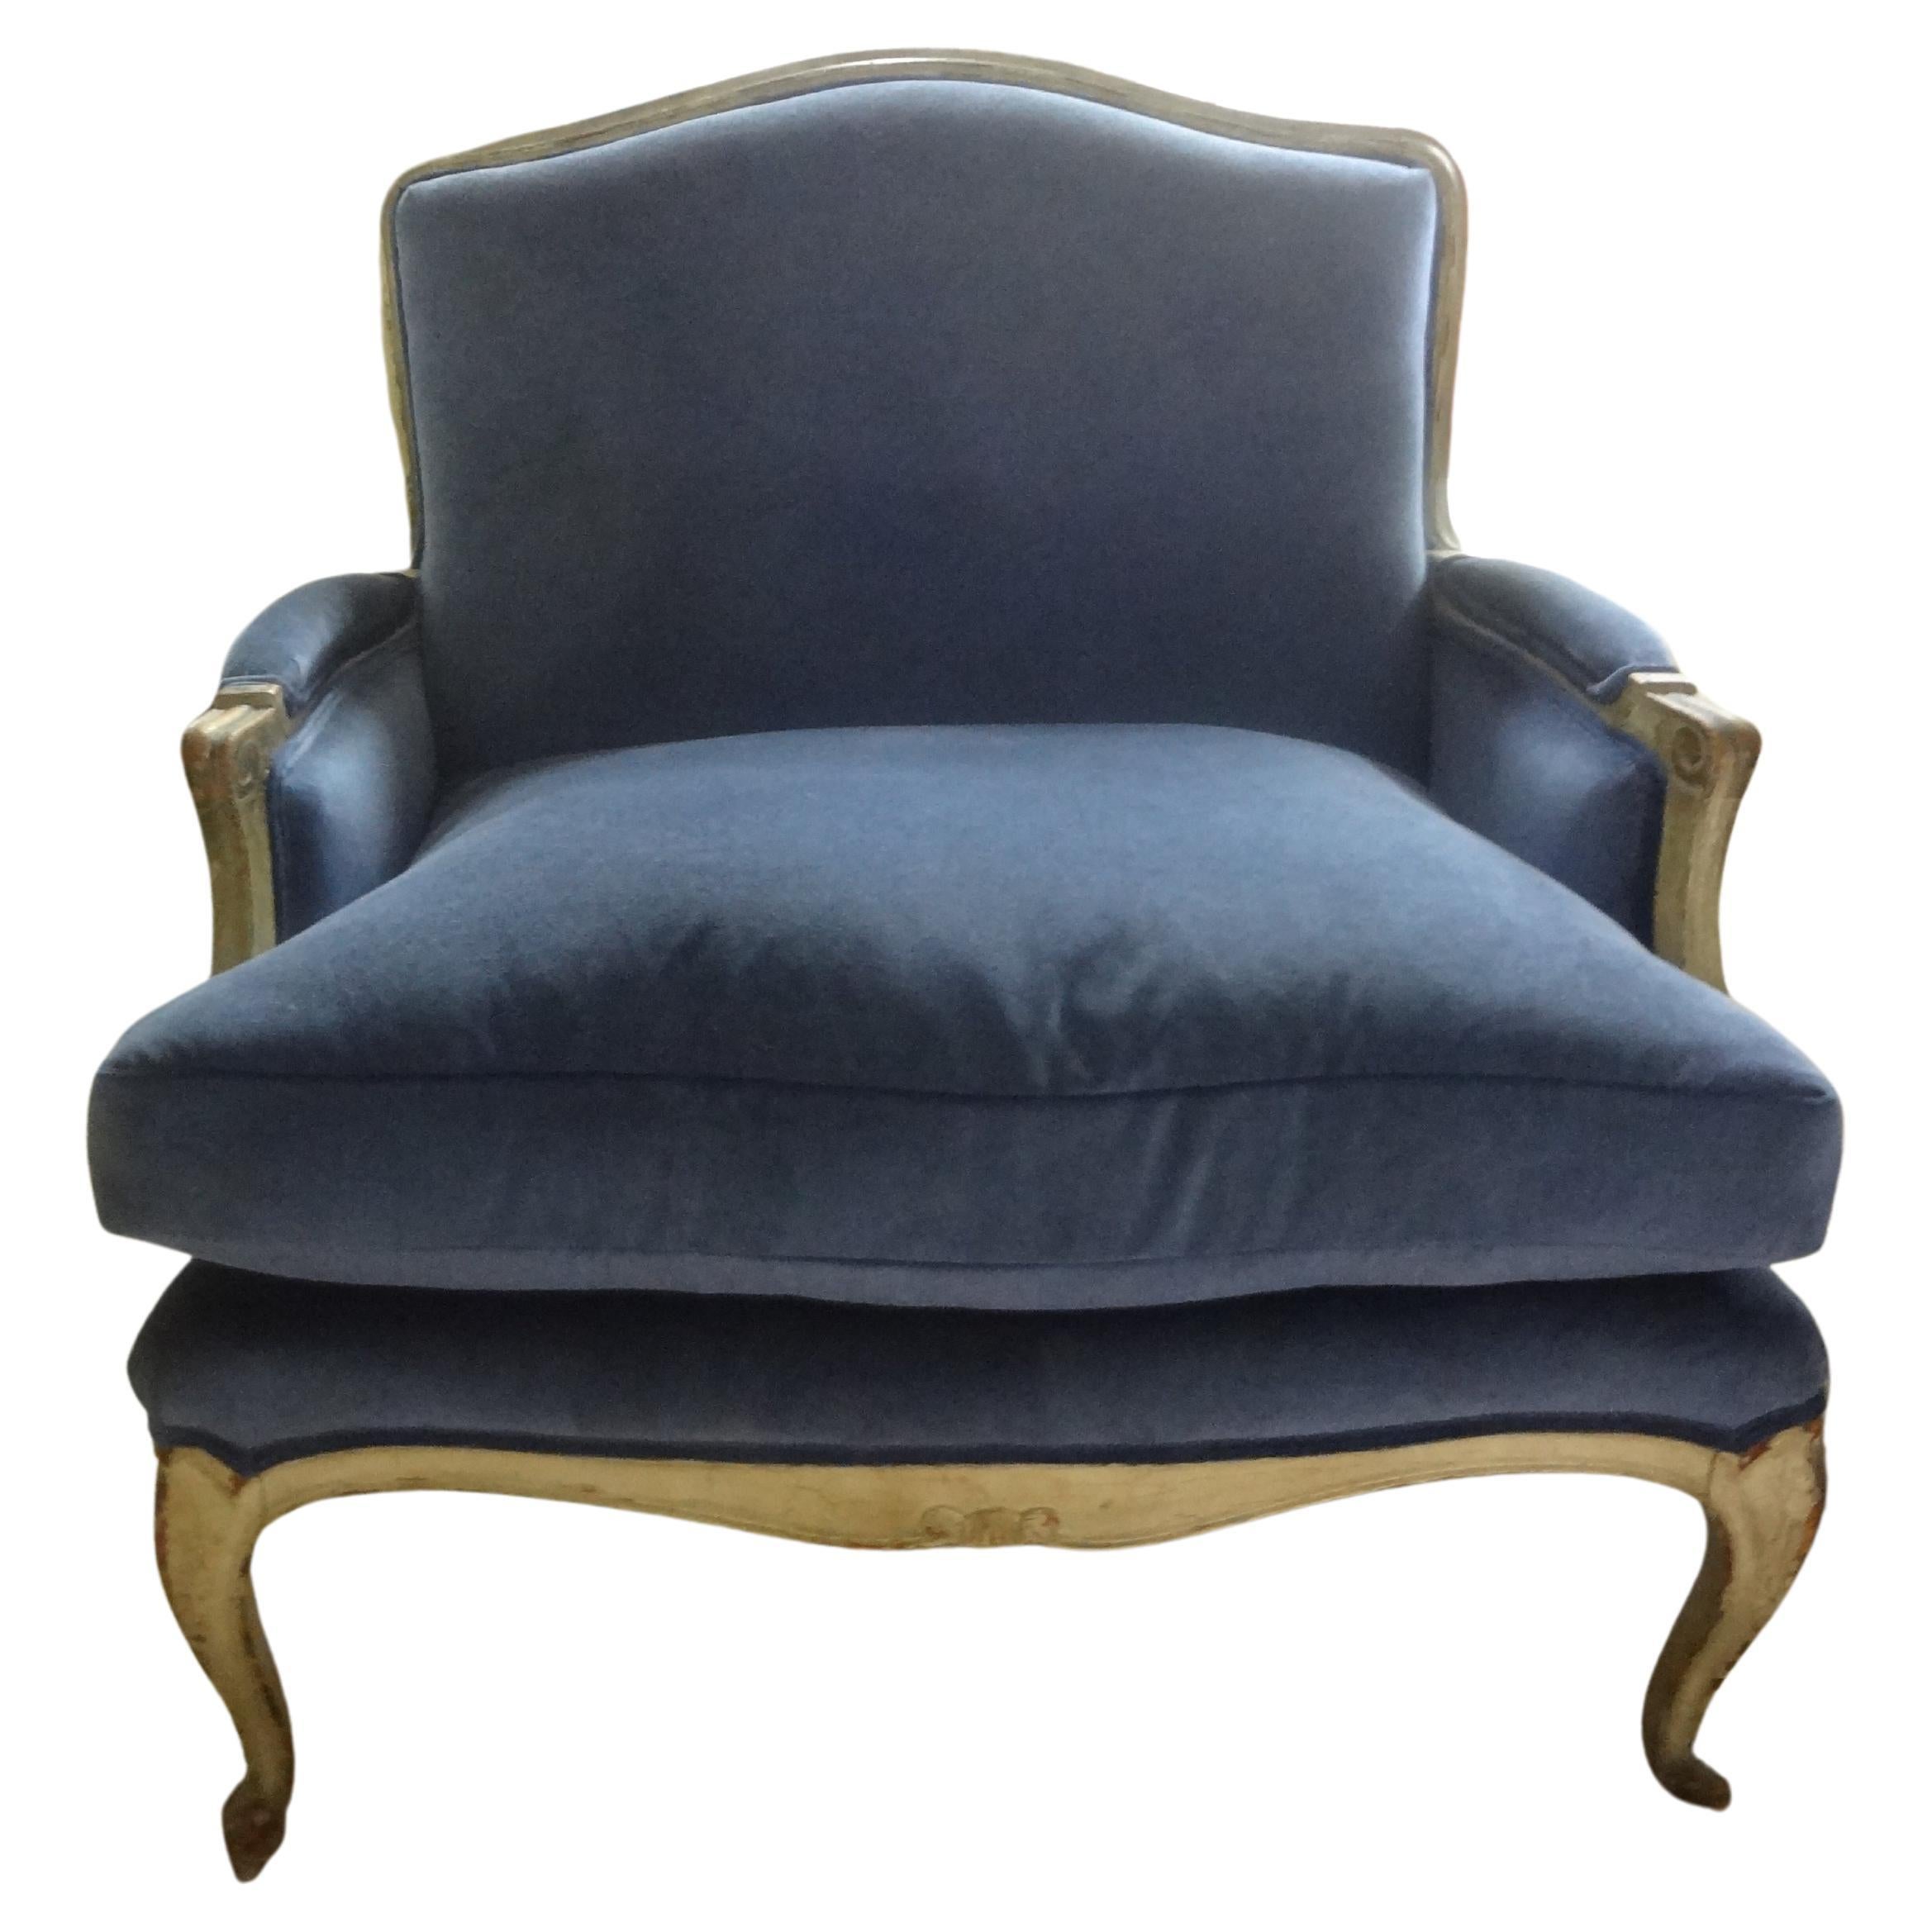 Paire de marquises italiennes du XIXe siècle de style Louis XV-XVI peintes. Les marquis sont des bergères, des causeuses ou des fauteuils surdimensionnés. Cette superbe paire de chaises marquises ou bergères peintes de style Louis XVI a été